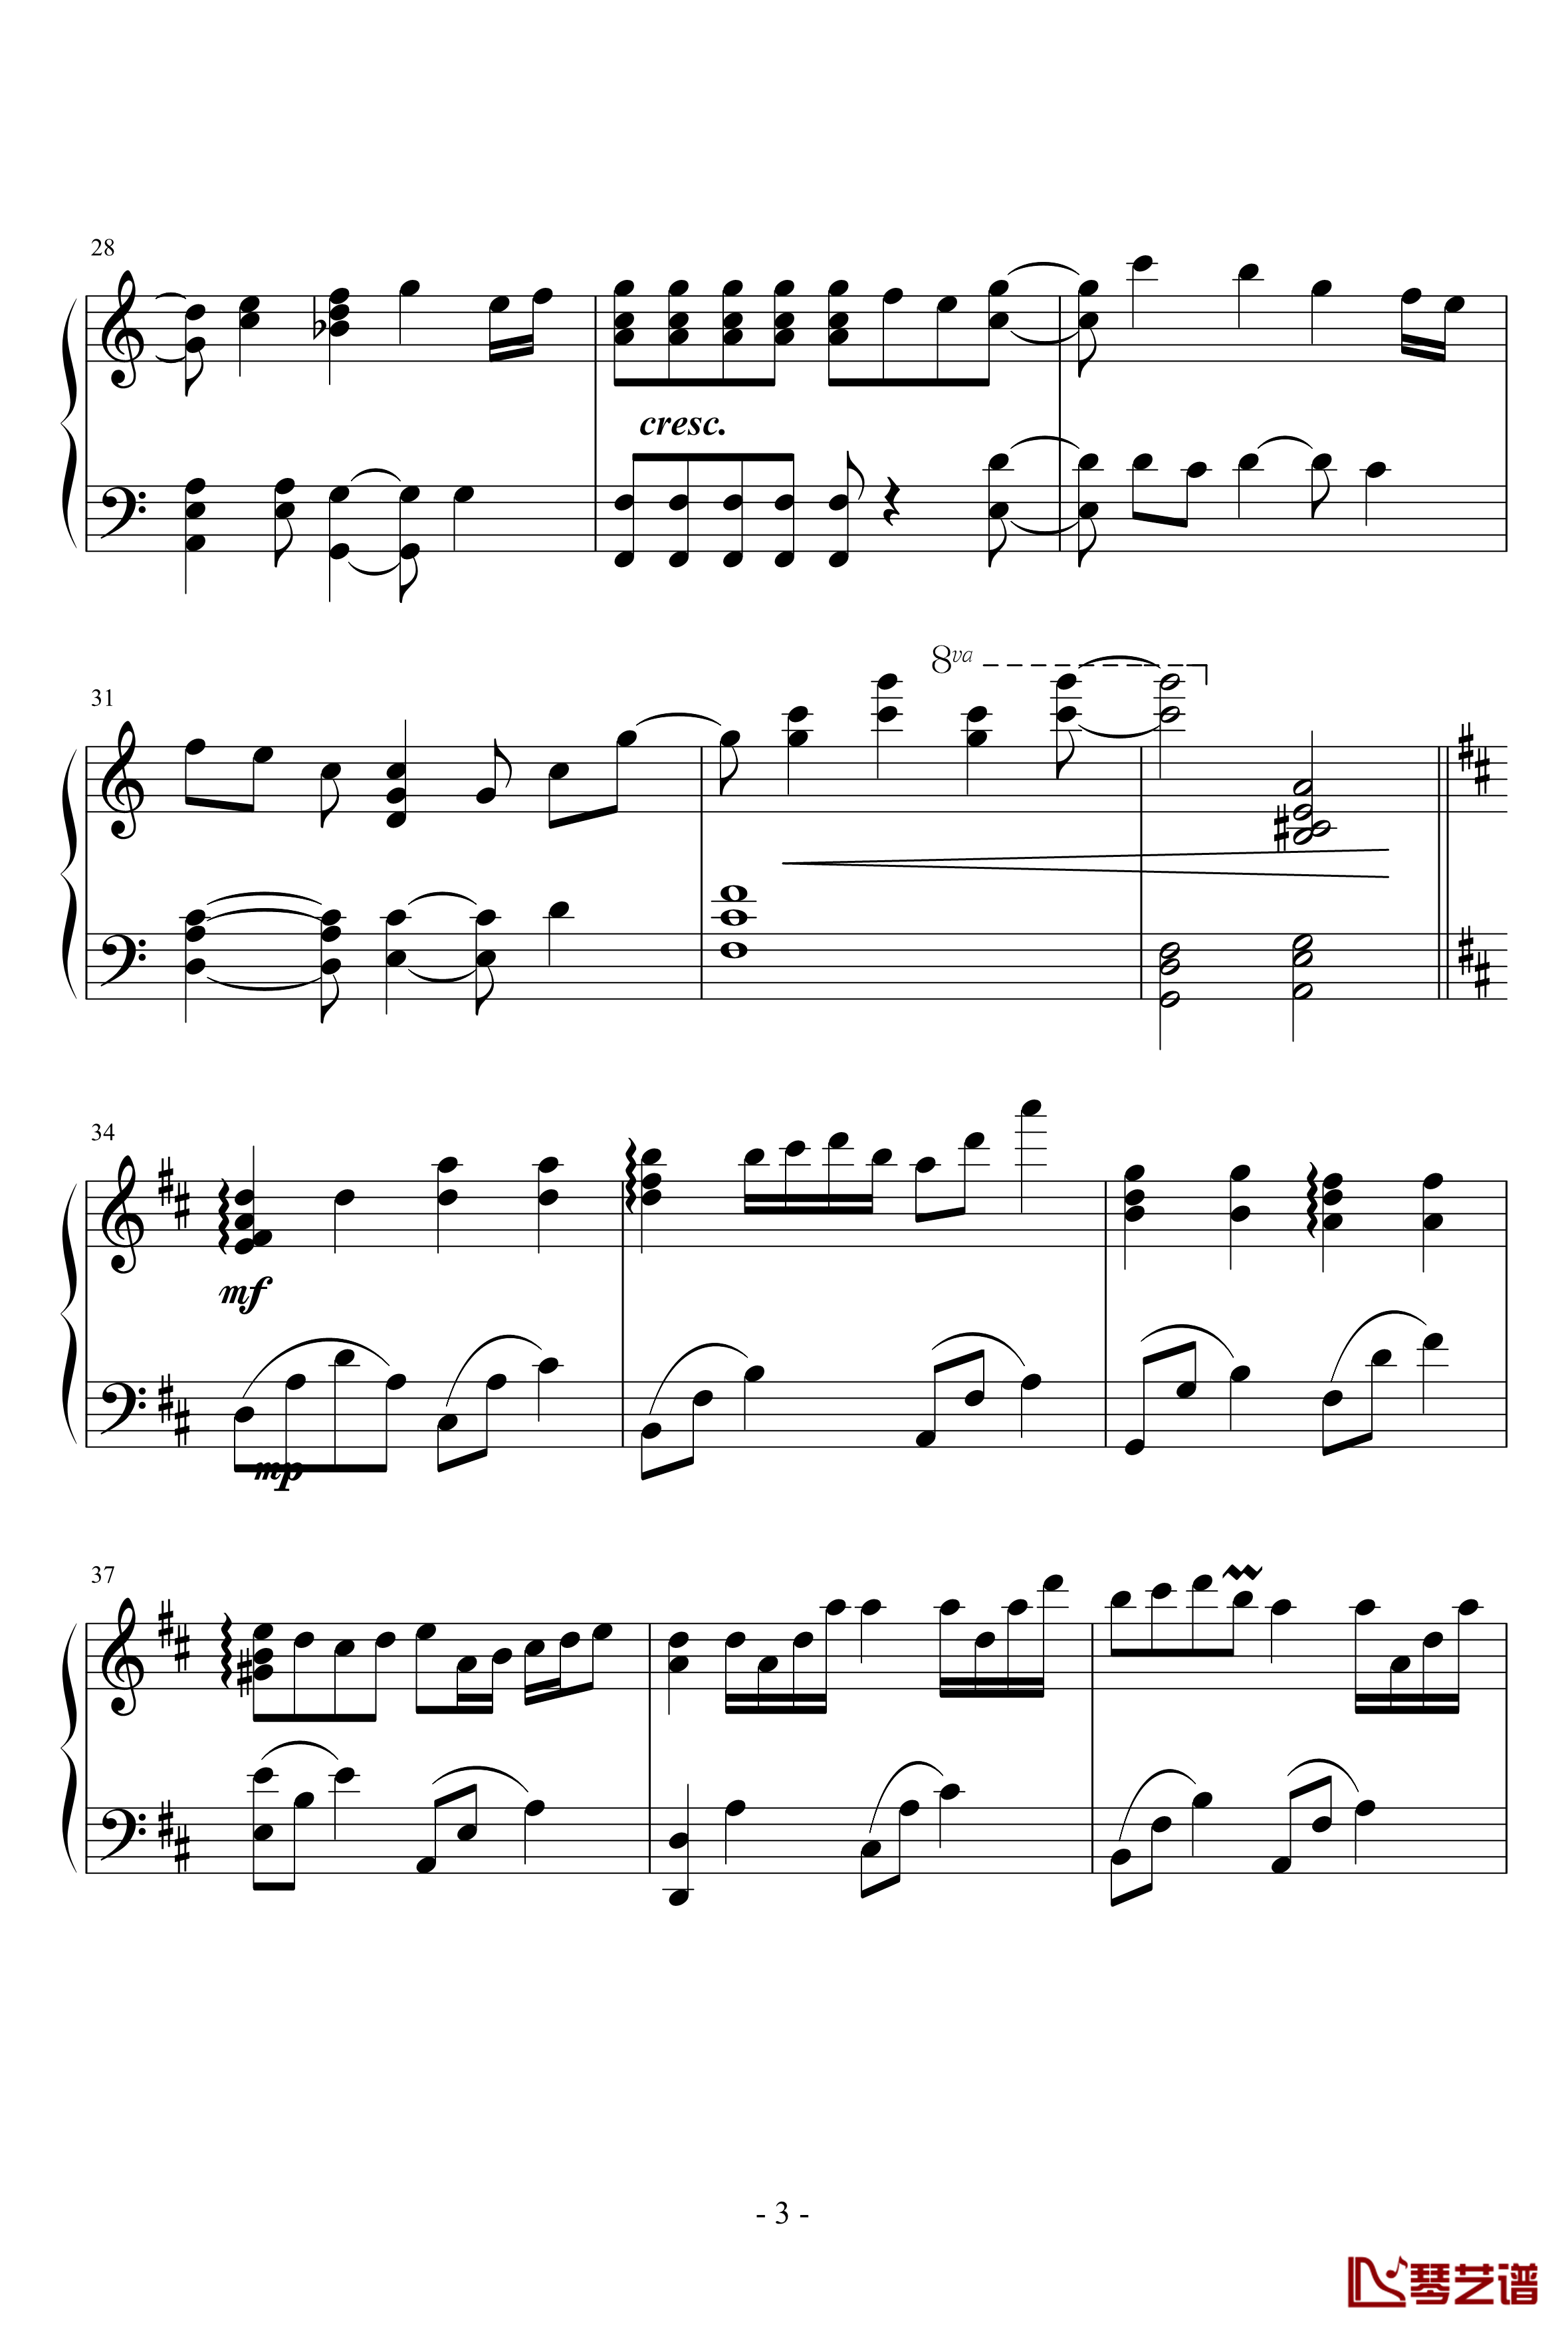 小星星幻想曲钢琴谱-完美版-V.K克3